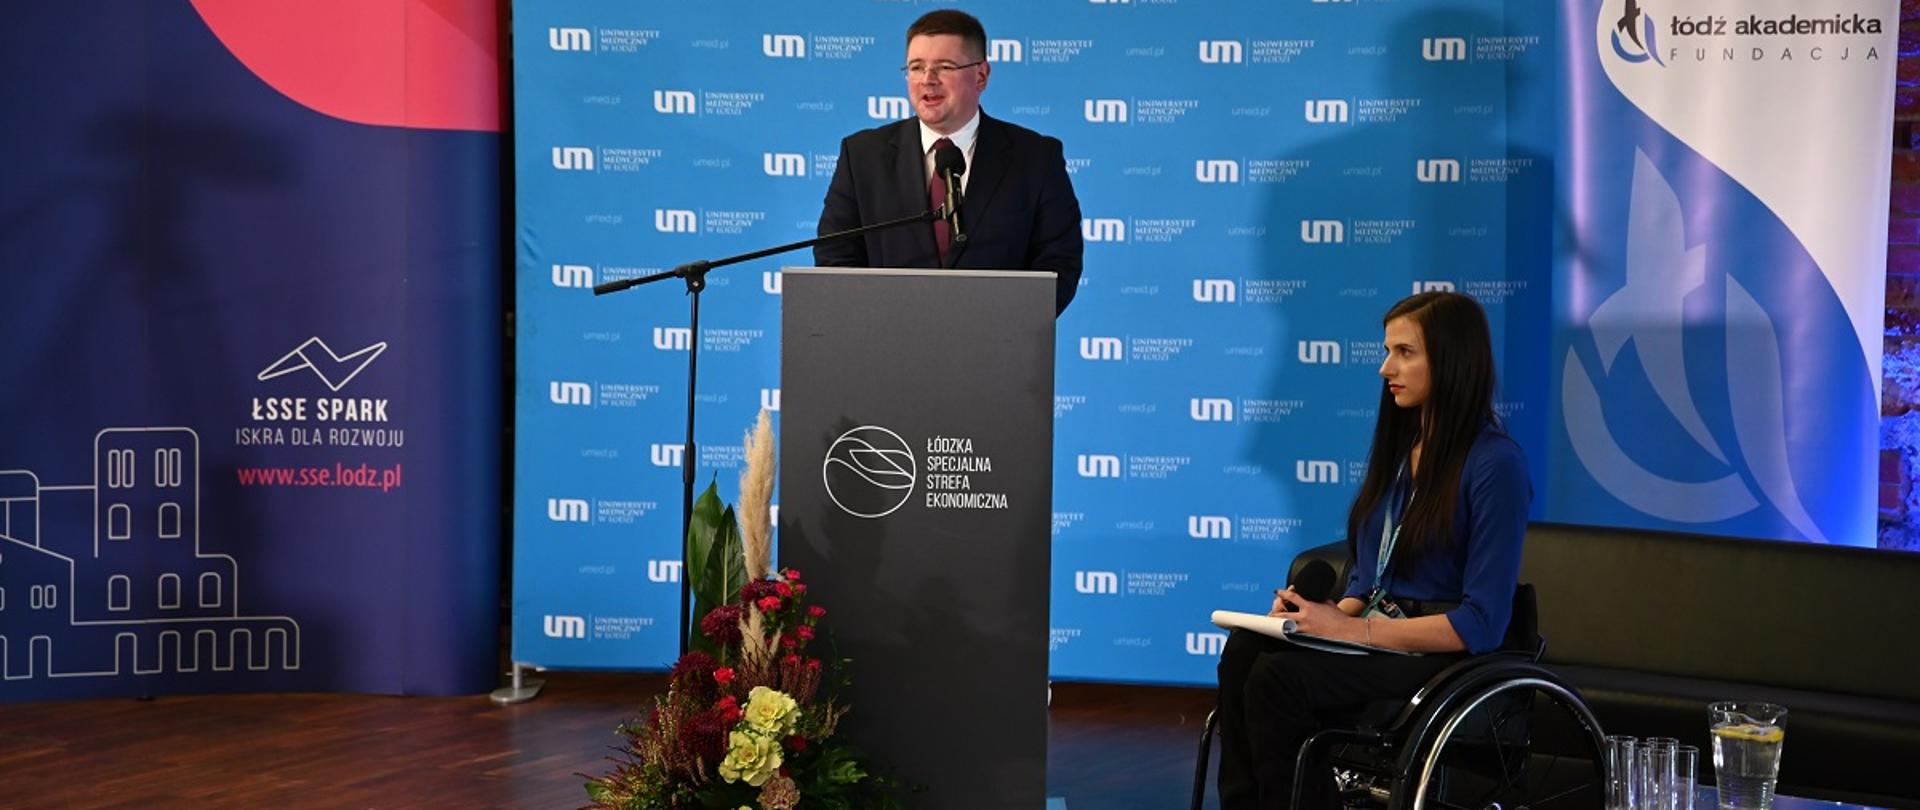 Wiceminister Tomasz Rzymkowski uczestnikiem konferencji „(Nie)pełnosprawni na rynku pracy”, Wiceminister Tomasz Rzymkowski przemawia podczas konferencji, stoi przy mównicy, obok na wózku inwalidzkim siedzi osoba niepełnosprawna.